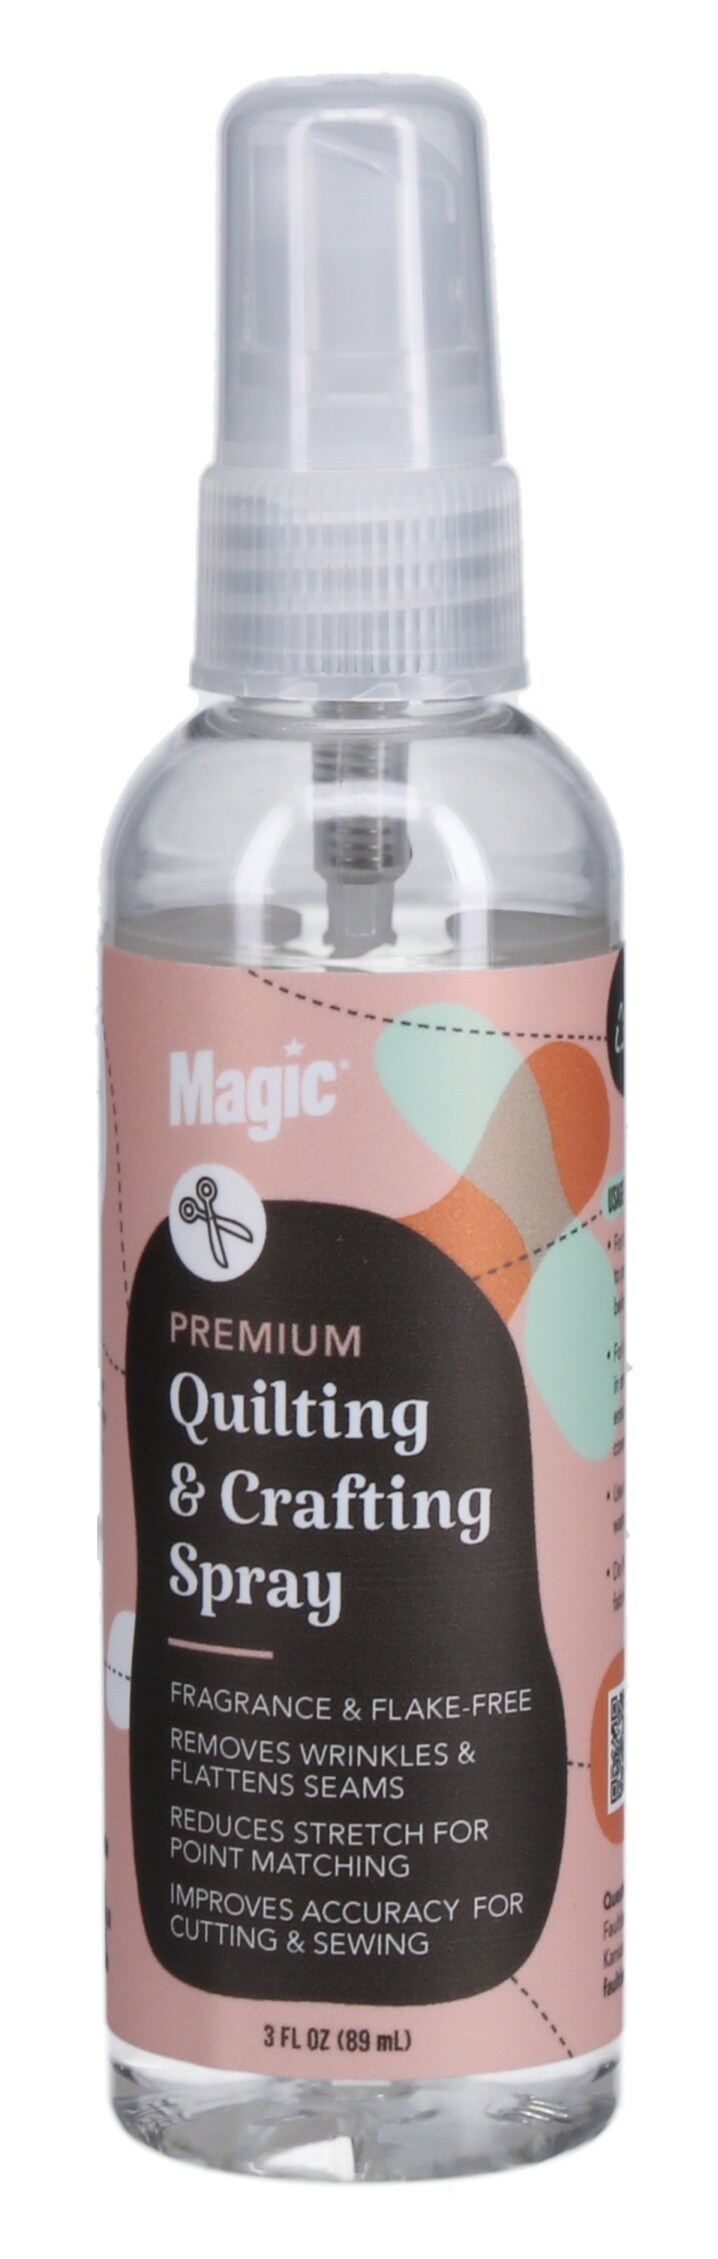 Magic Premium Quilting & Crafting Pump Spray 3 fl. oz. - Magic